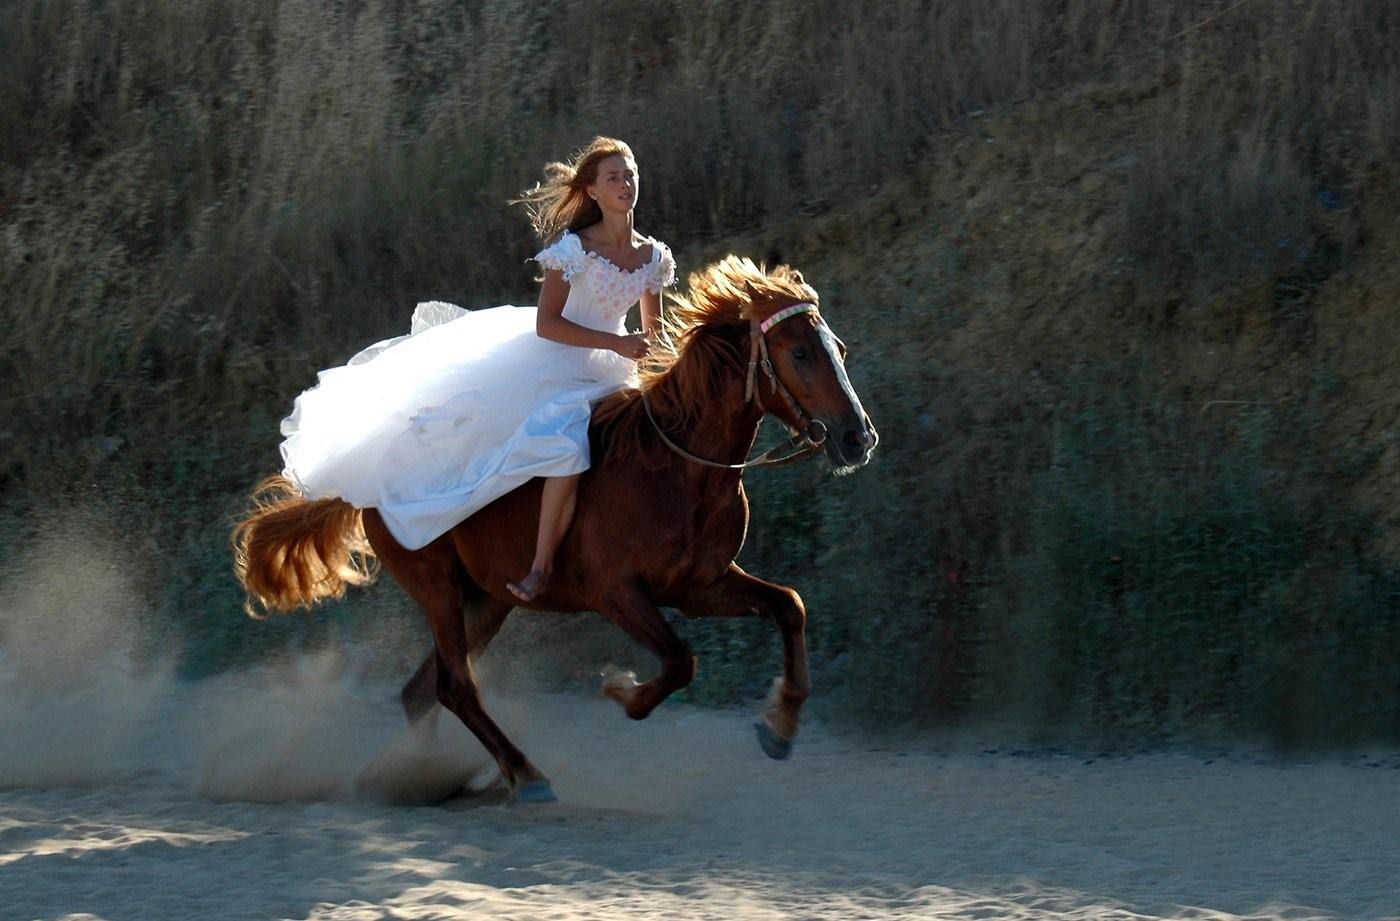 Догнать взобраться. Девушка верхом на лошади. Женщина на коне. Девушка на коне верхом. Девушка скачет на лошади.